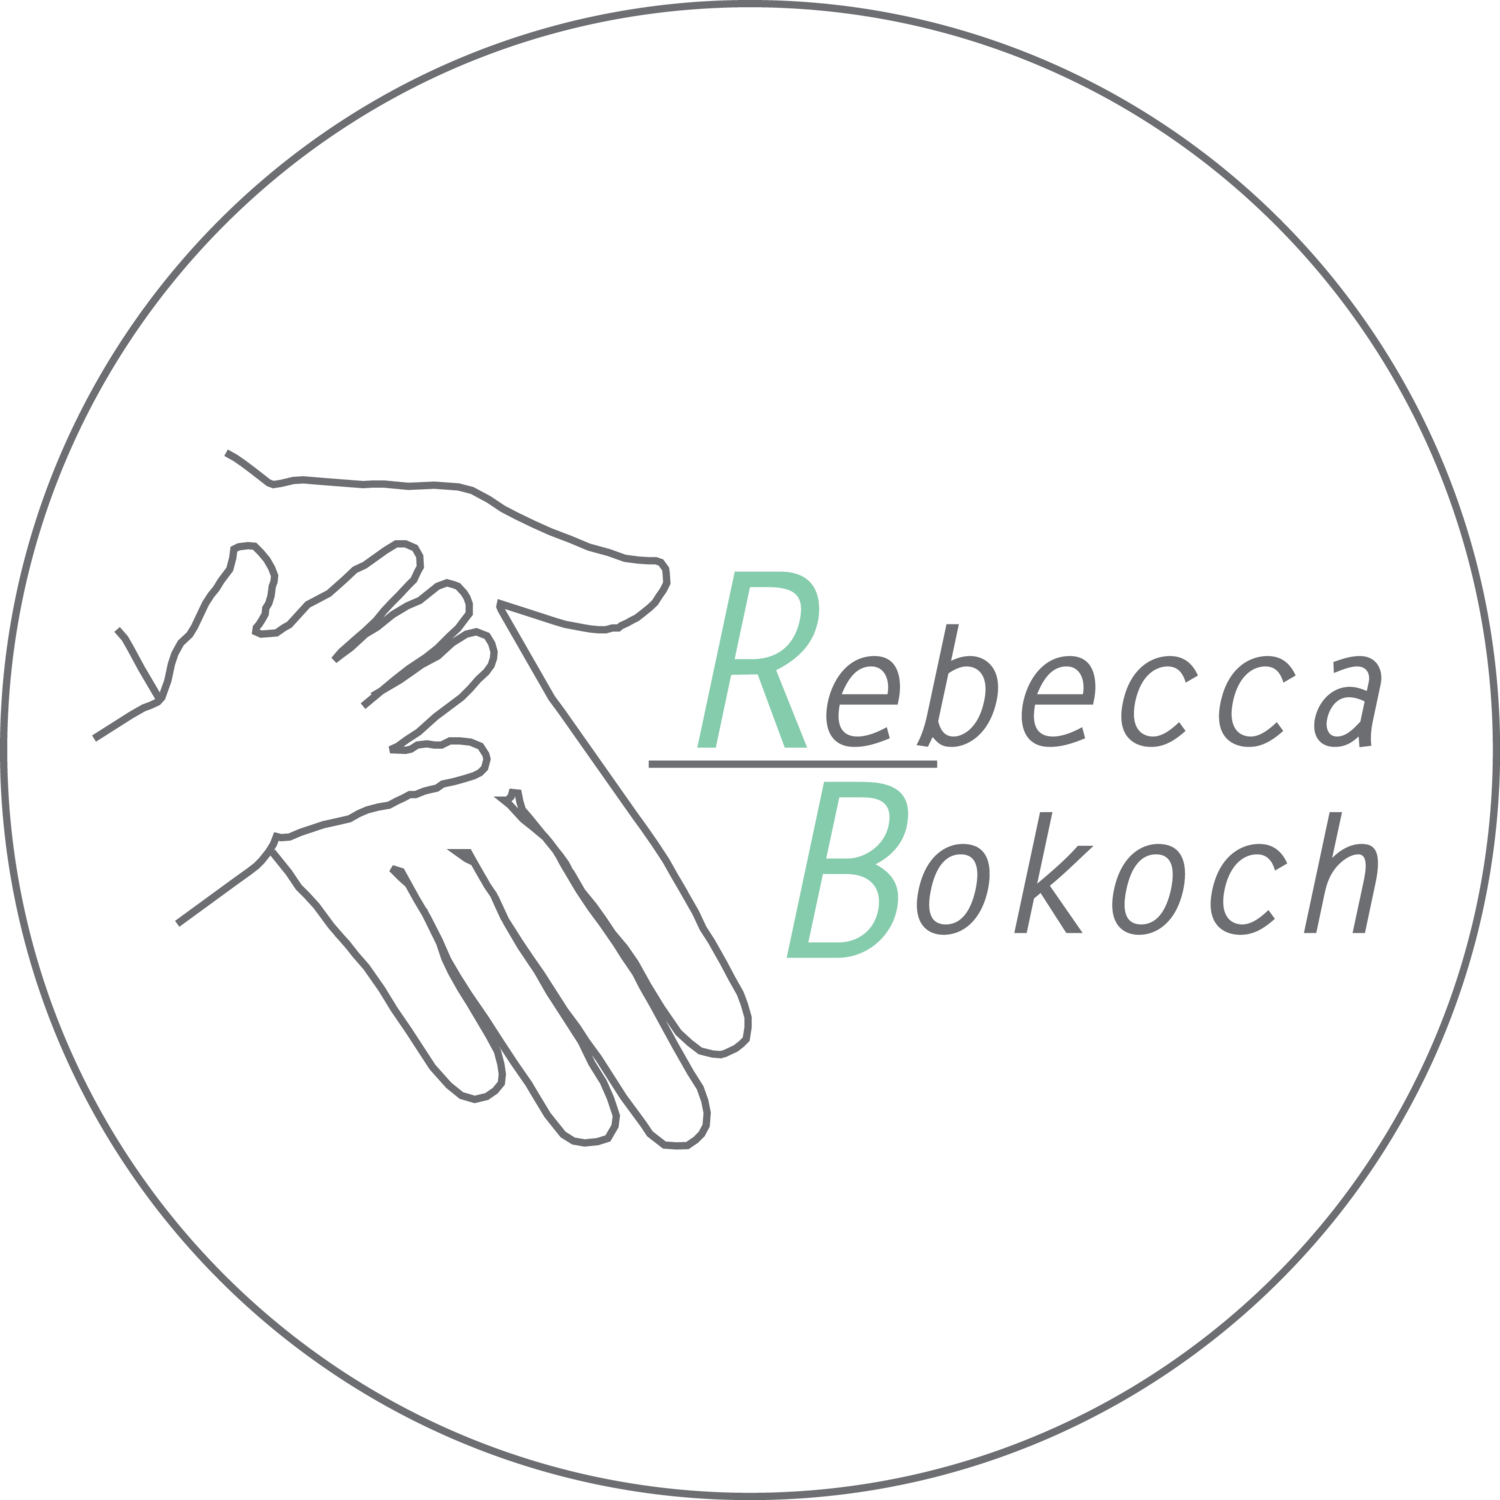 Rebecca Bokoch